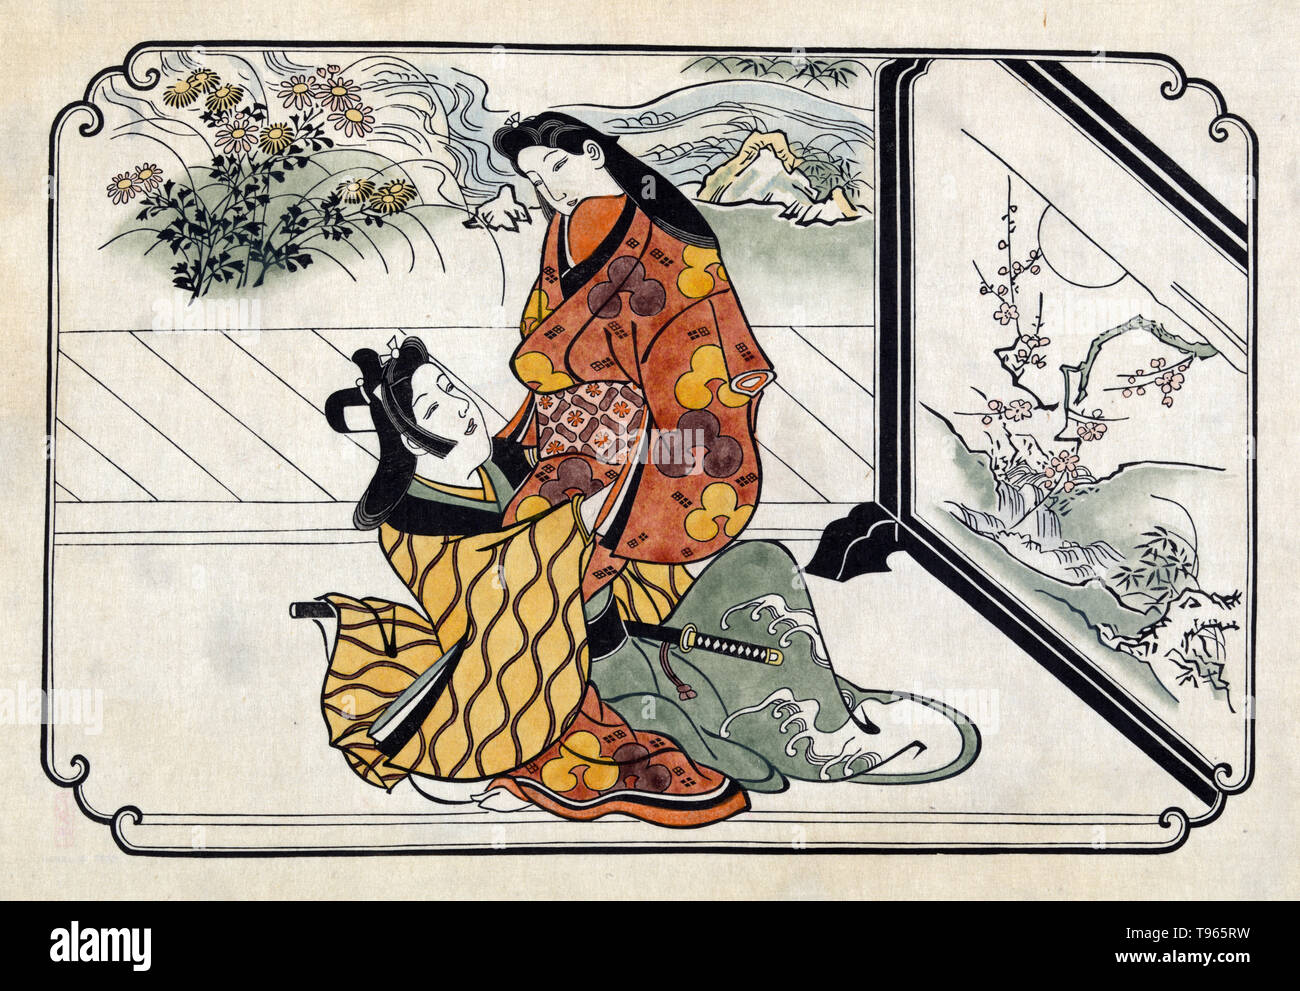 Due amanti abbracciando nella parte anteriore di un dipinto di schermo. Ukiyo-e (immagine del mondo fluttuante) è un genere di arte giapponese che fiorì dal XVII attraverso il XIX secolo. Ukiyo-e è stato centrale per formare l'Occidente la percezione dell'arte giapponese nel tardo XIX secolo. Dal 1870 Japonism divenne un importante tendenza e ha avuto una forte influenza sui primi impressionisti, nonché Post-Impressionists e Art Nouveau artisti. Foto Stock